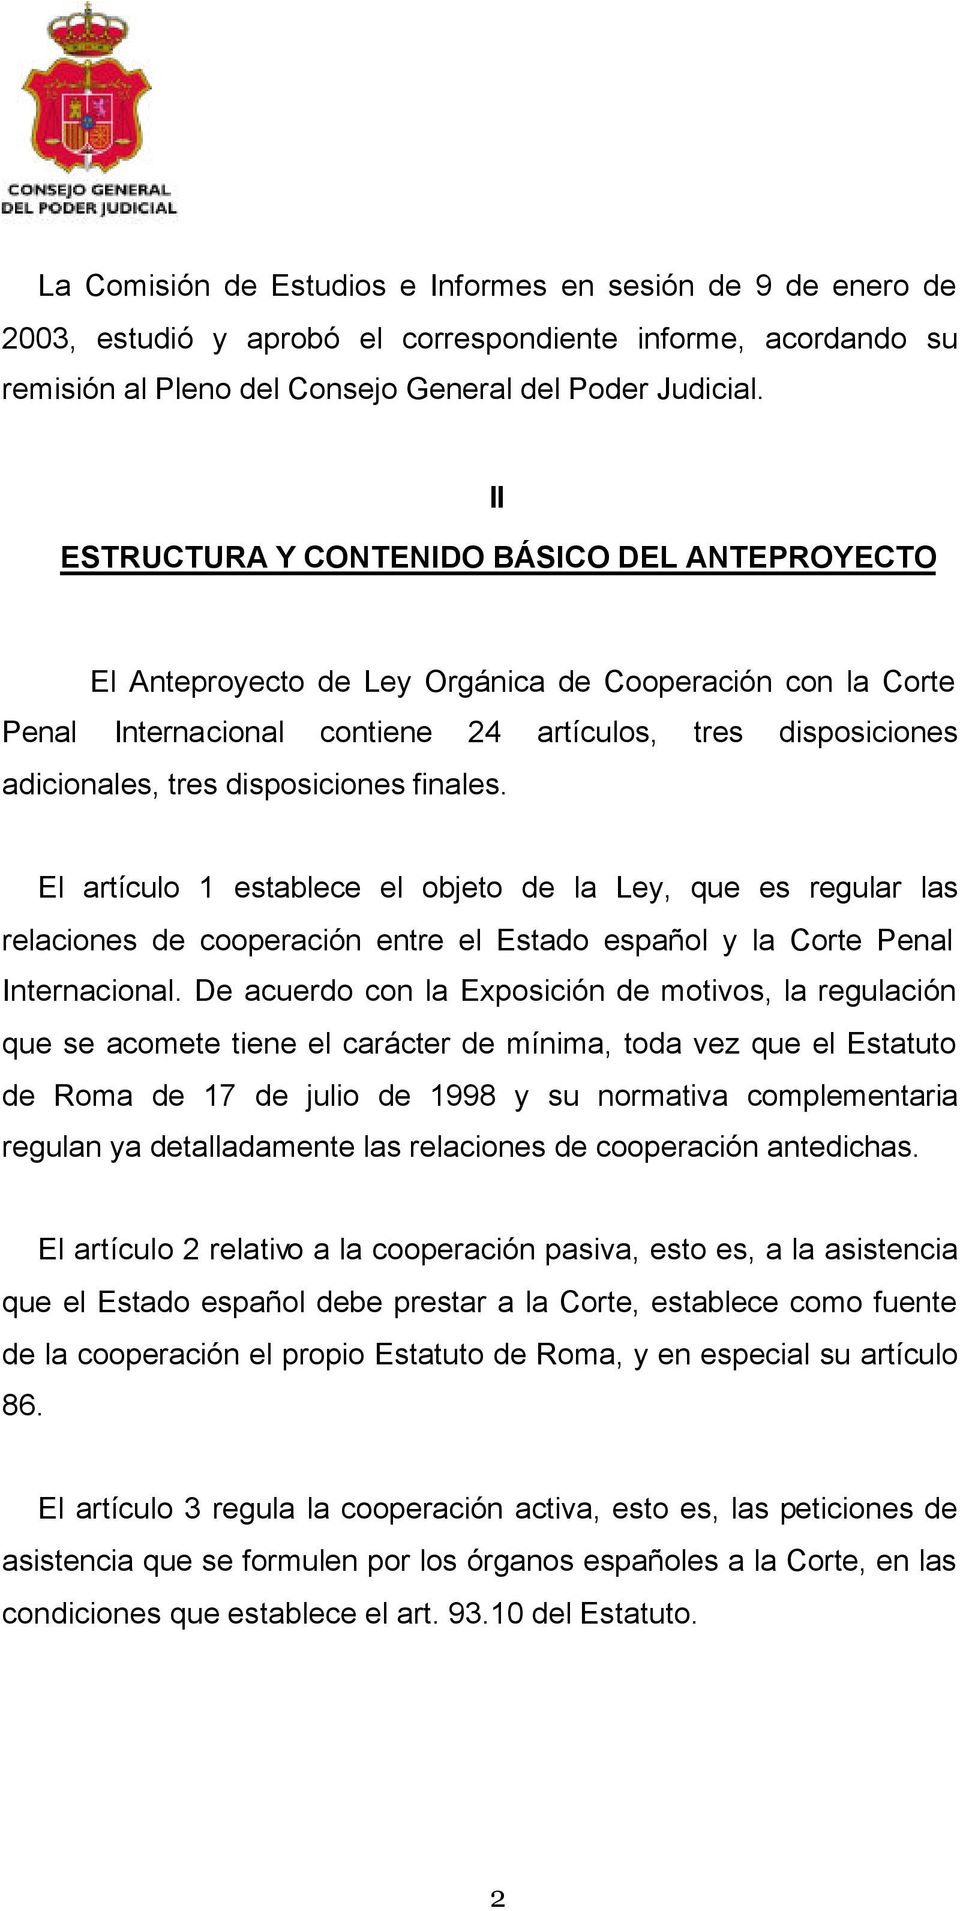 disposiciones finales. El artículo 1 establece el objeto de la Ley, que es regular las relaciones de cooperación entre el Estado español y la Corte Penal Internacional.